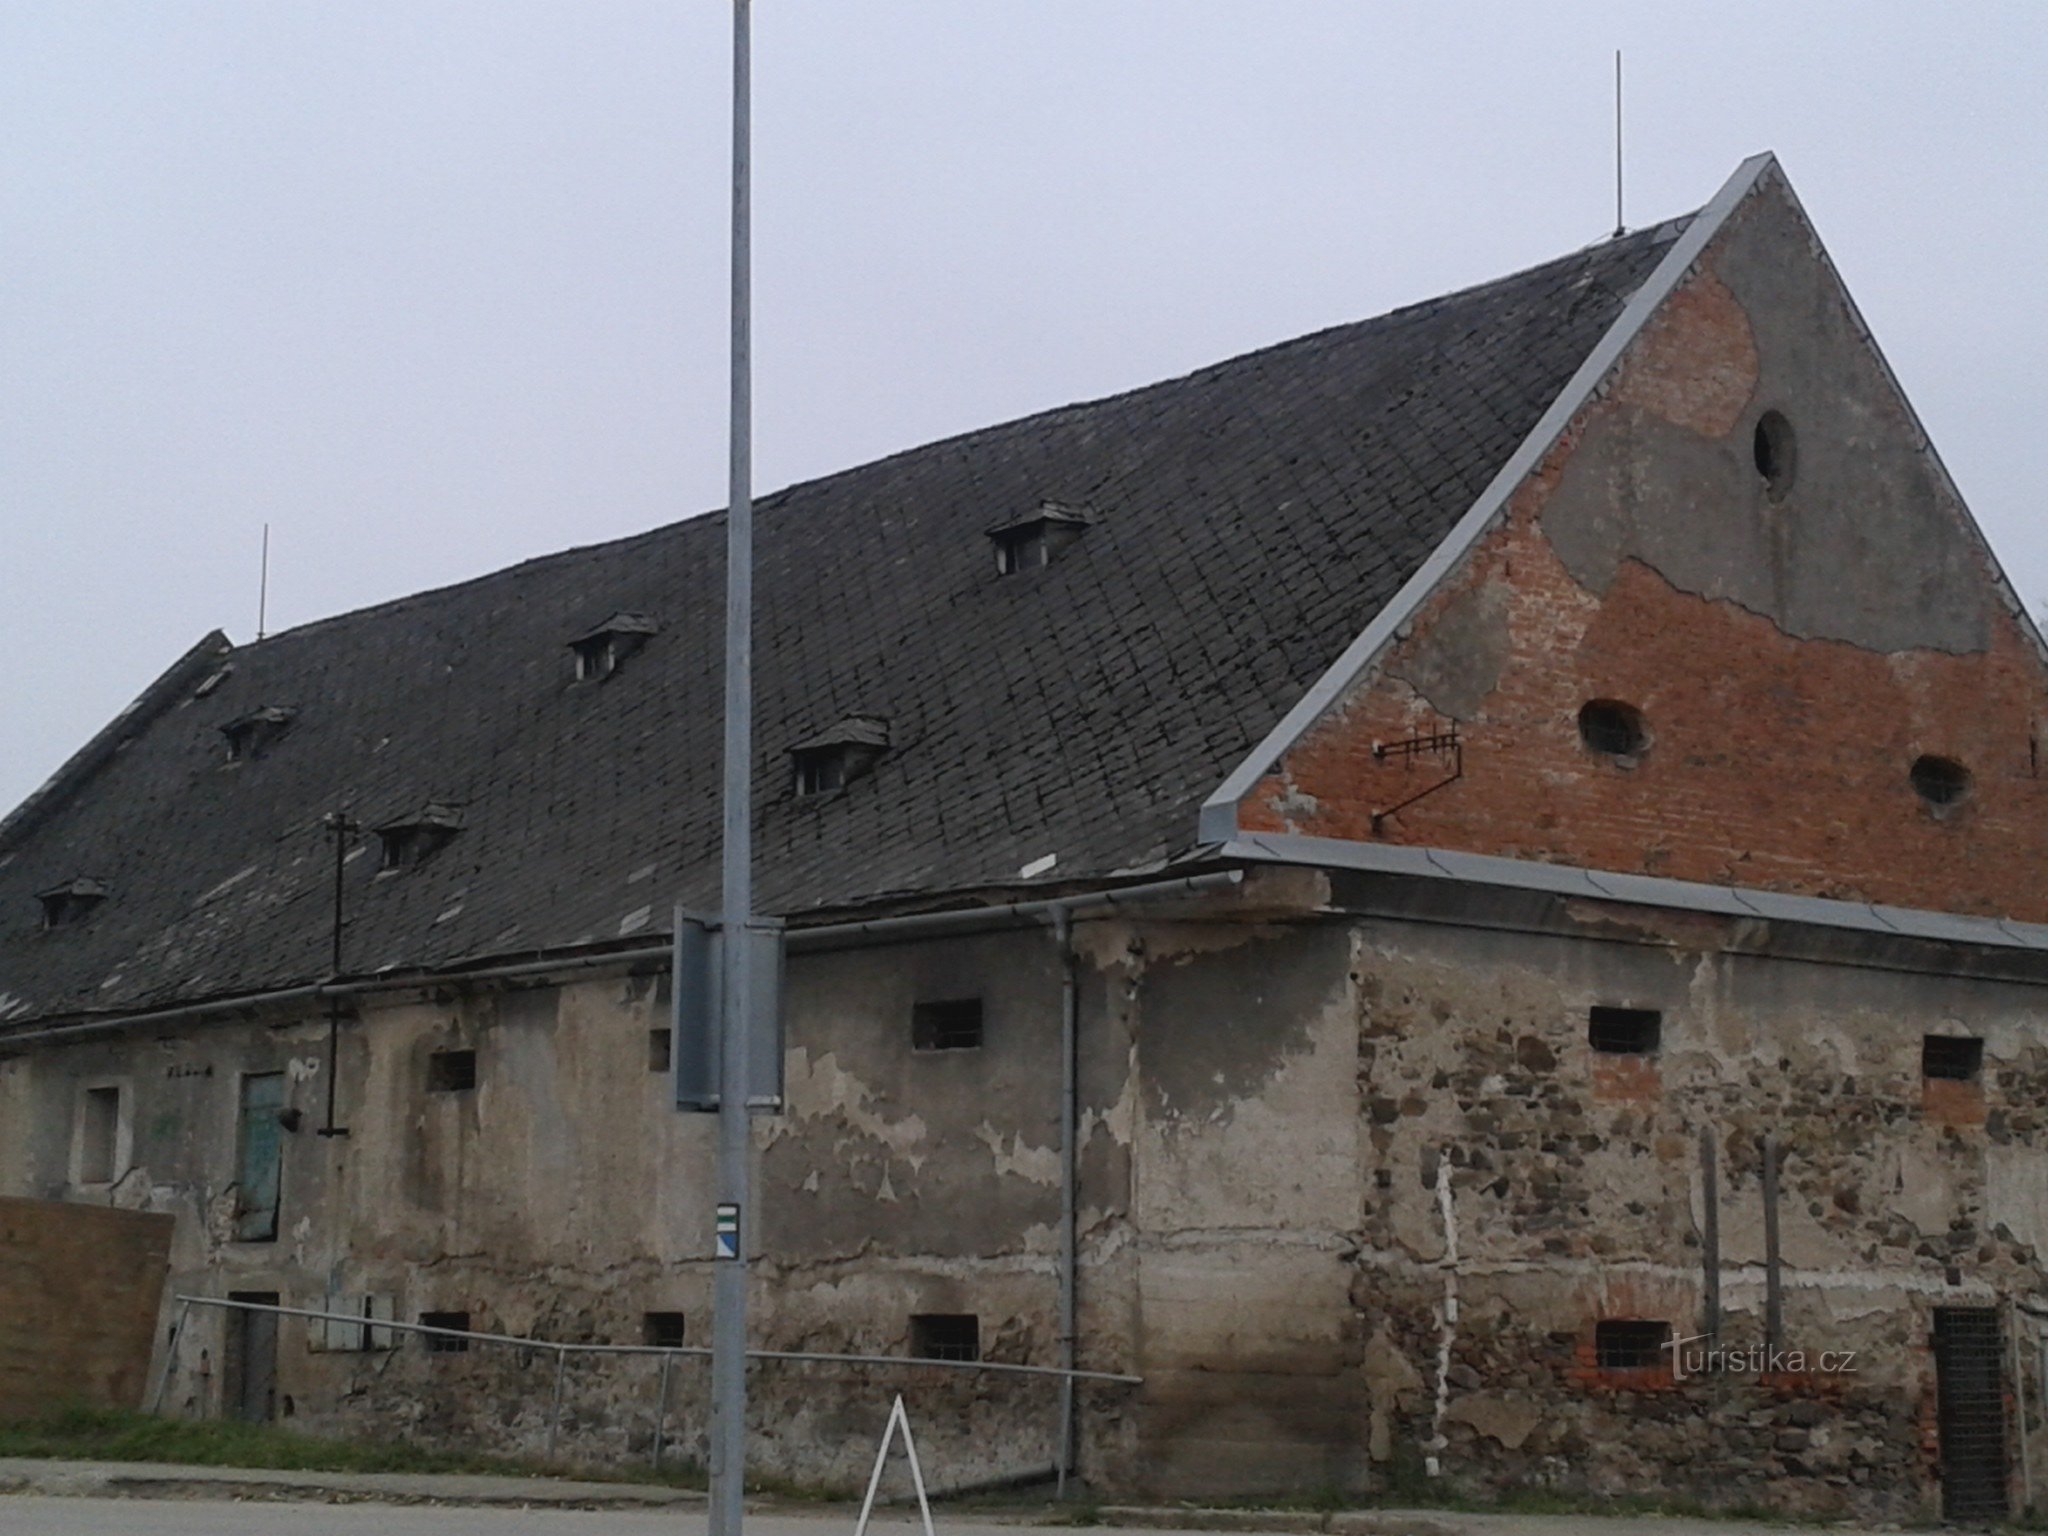 Zábřeh - granaio barocco - monumento culturale immobile protetto